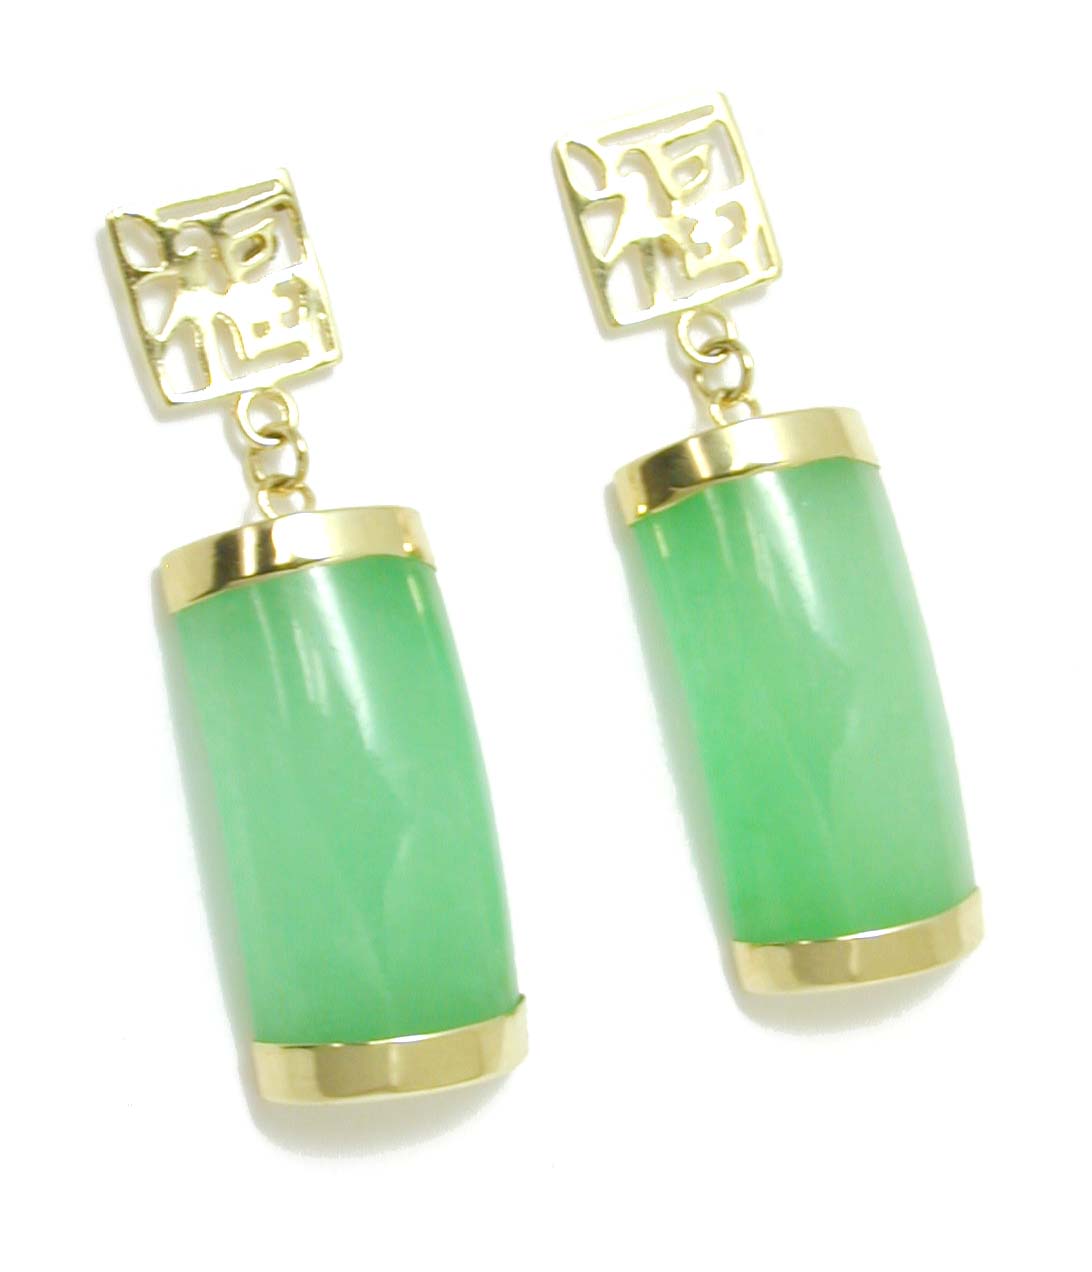 
Green Dyed Jade Segment Drop Earrings
